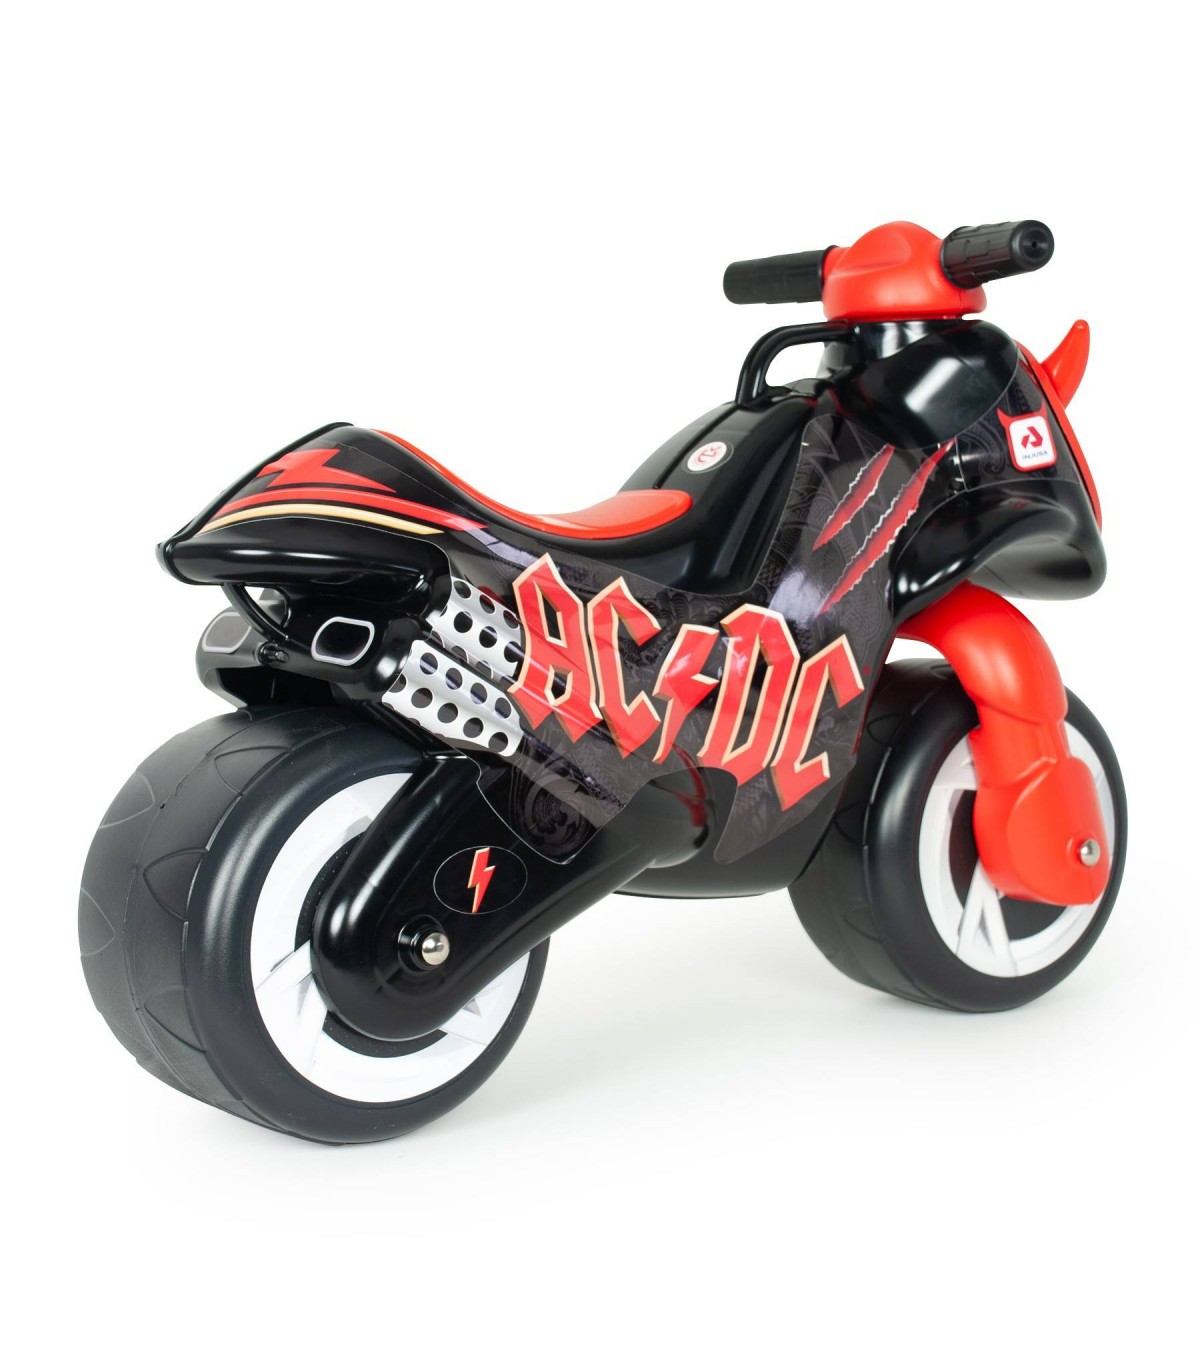  Moto porteur Neox AC/DC Color Noir et Rouge Recommandé pour les Enfants de plus de 18 Mois avec Décoration Permanente et Roues Larges INJUSA